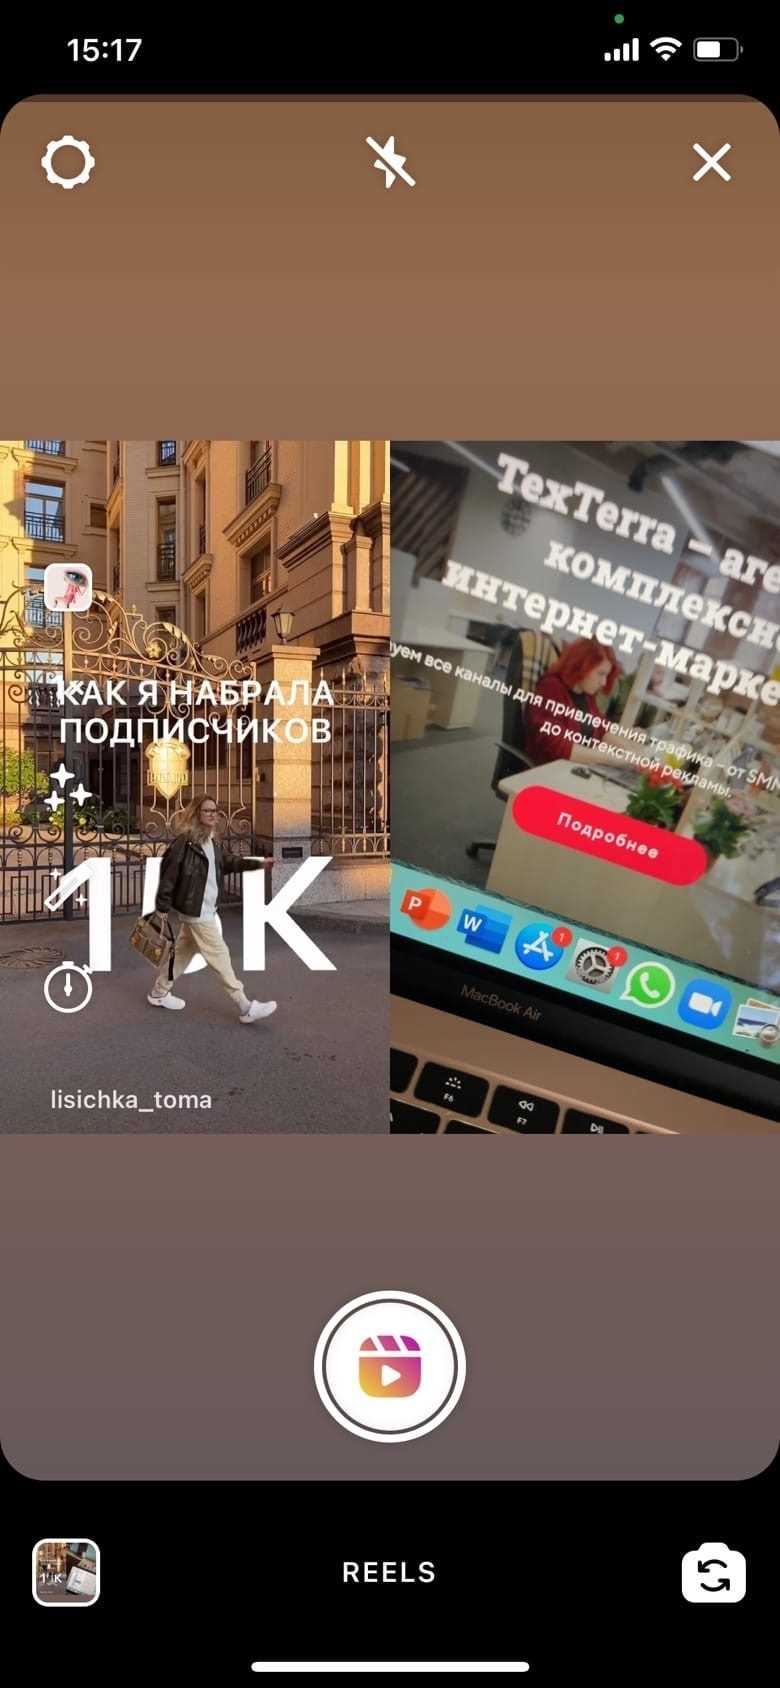 Instagram - политики и логотип TikTok запрещены в Reels